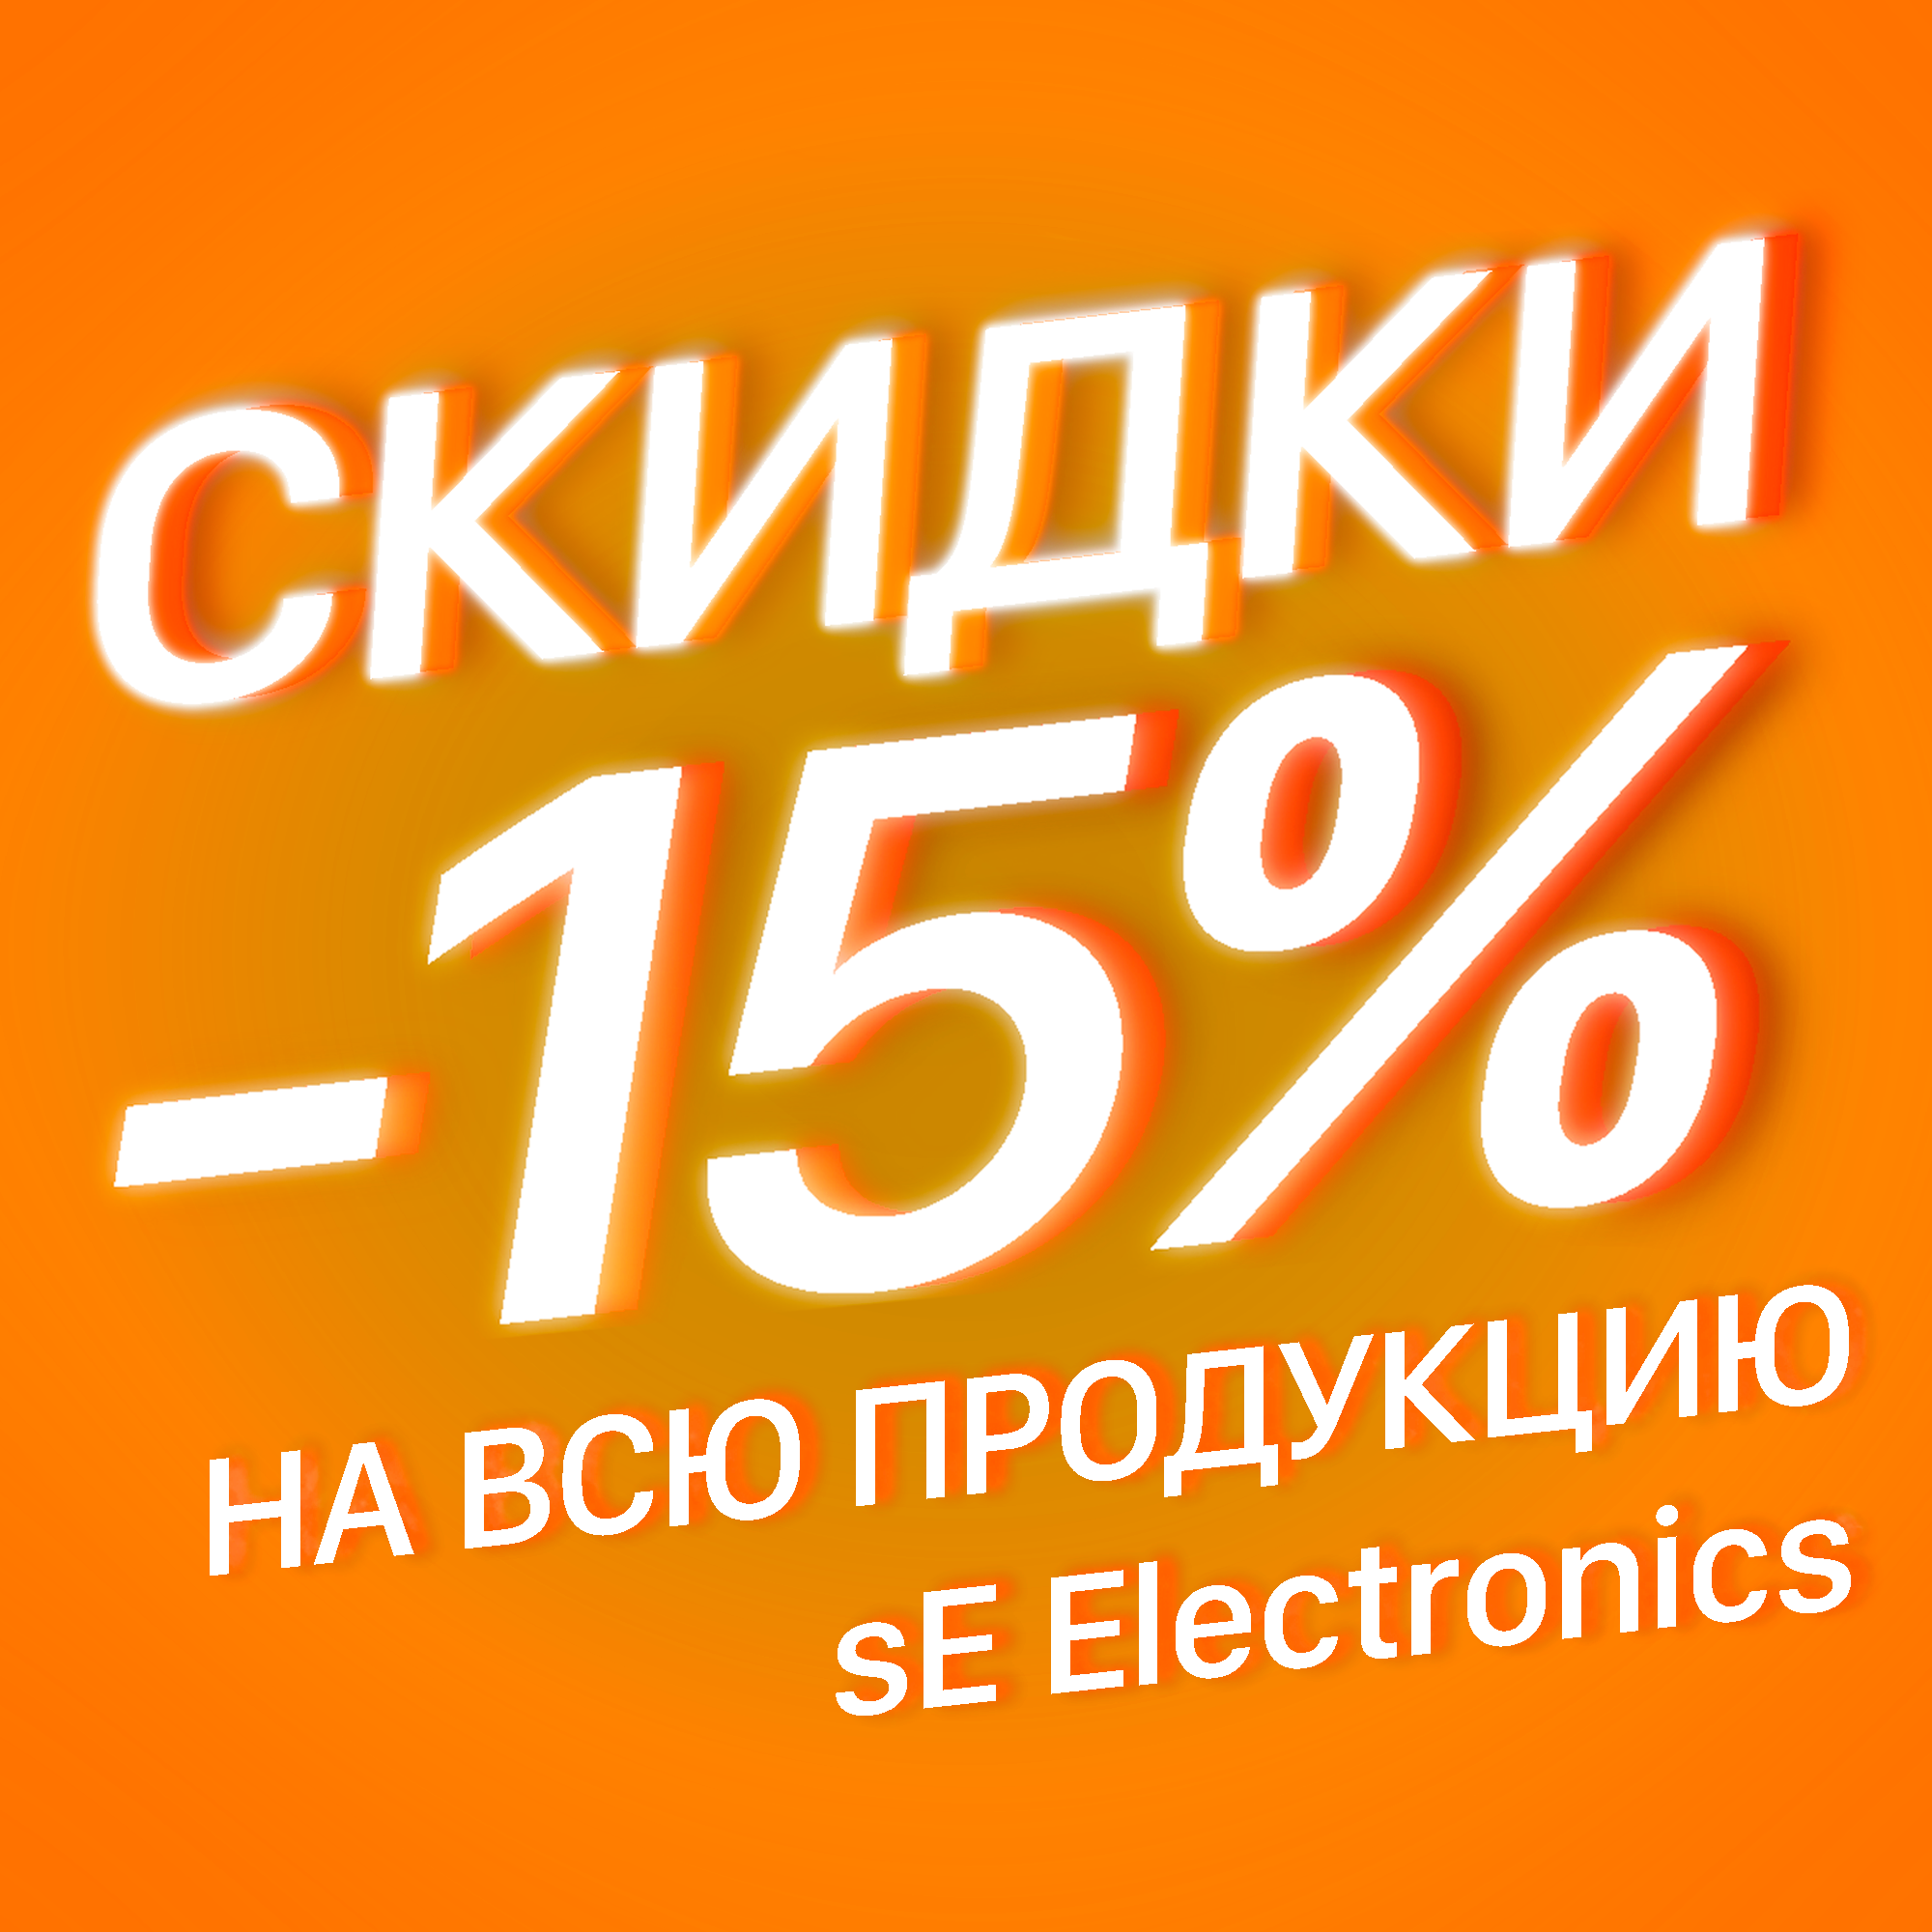 АКЦИЯ 15% НА ПРОДУКЦИЮ SE ELECTRONICS